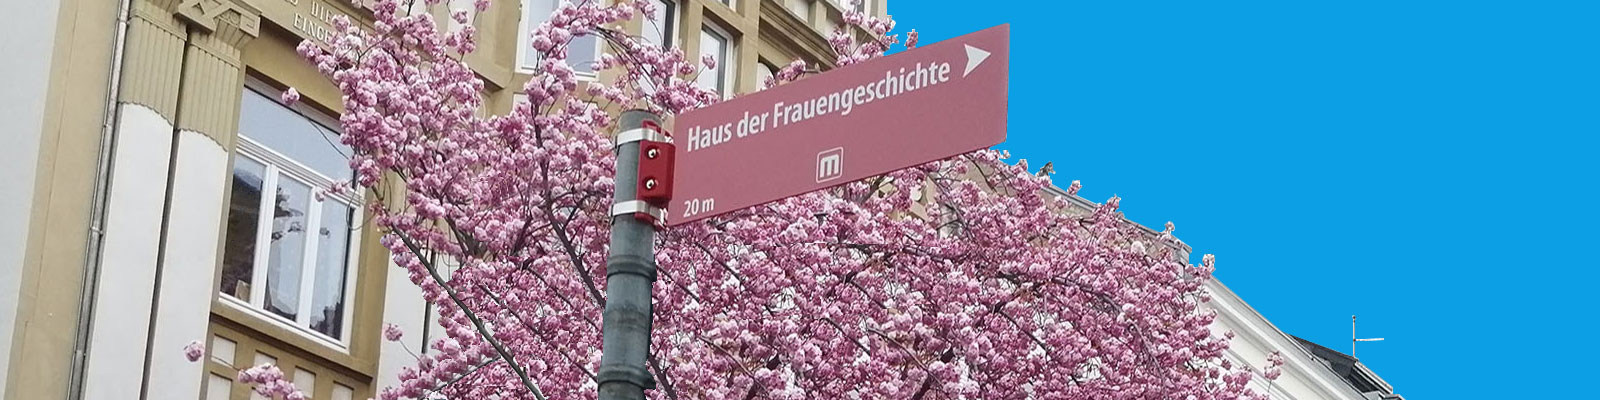 Straßenhinweisschild zum Haus der FrauenGeschichte vor dem Hintergrund eines Kirschblütenbaums